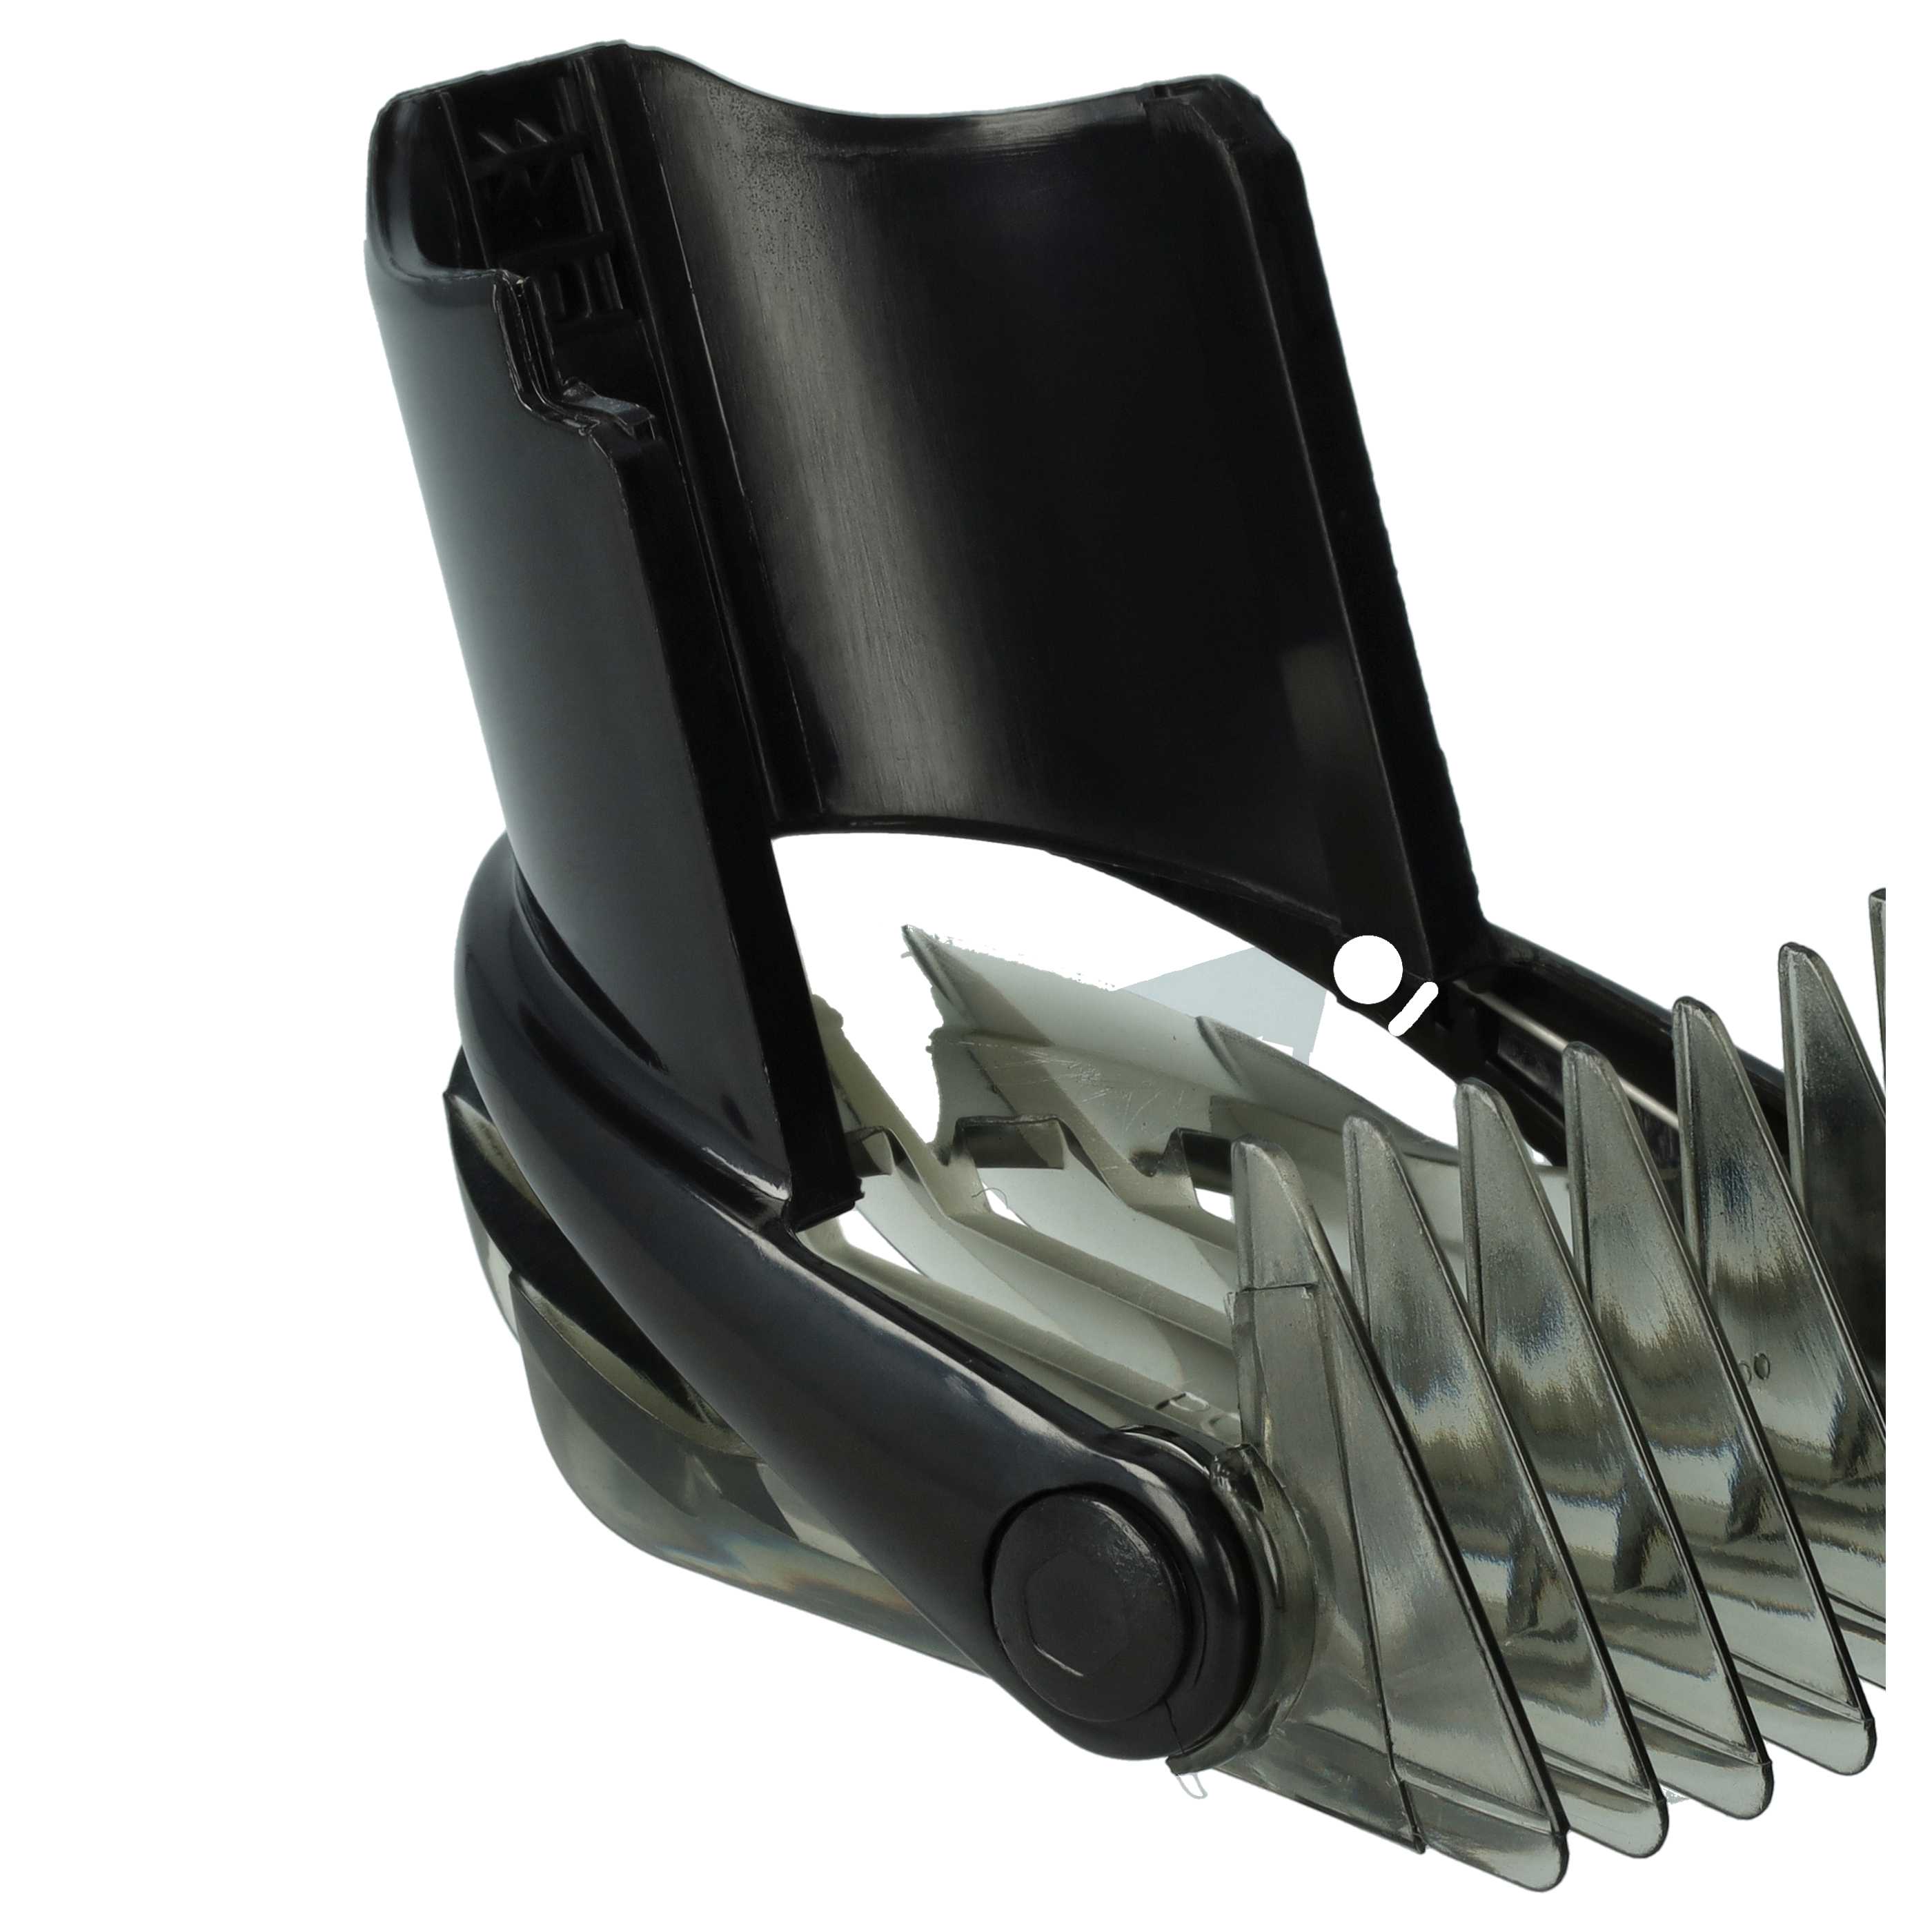 Kammaufsatz 3 - 21 mm passend für Philips QC5010 Haarschneidemaschine